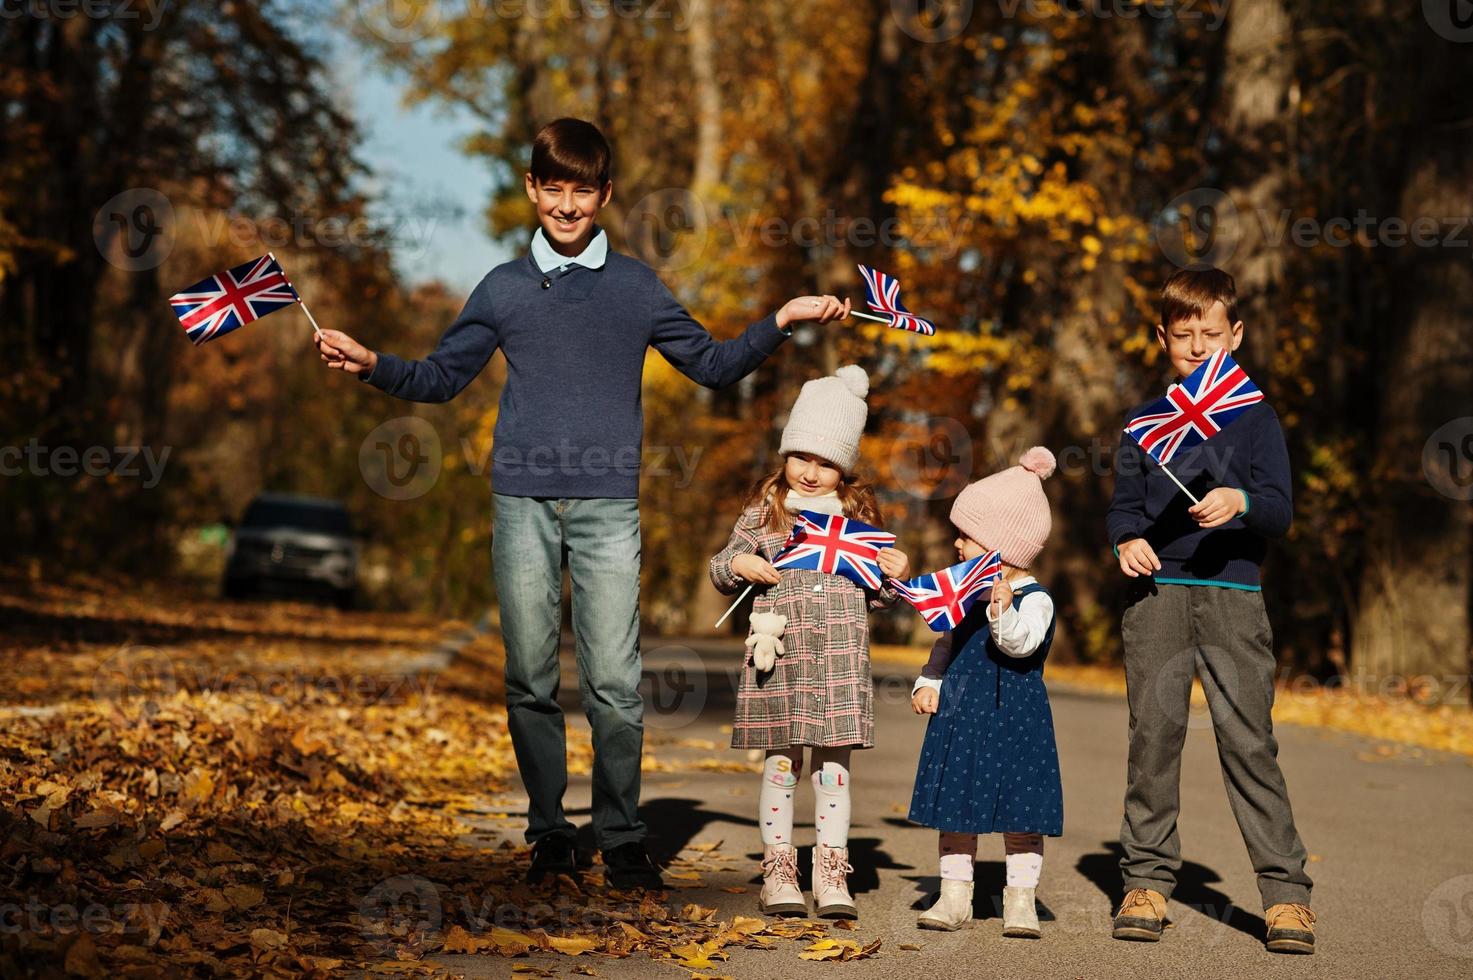 festa nazionale del regno unito. quattro bambini con bandiere britanniche nel parco autunnale. Britishness che celebra il Regno Unito. foto